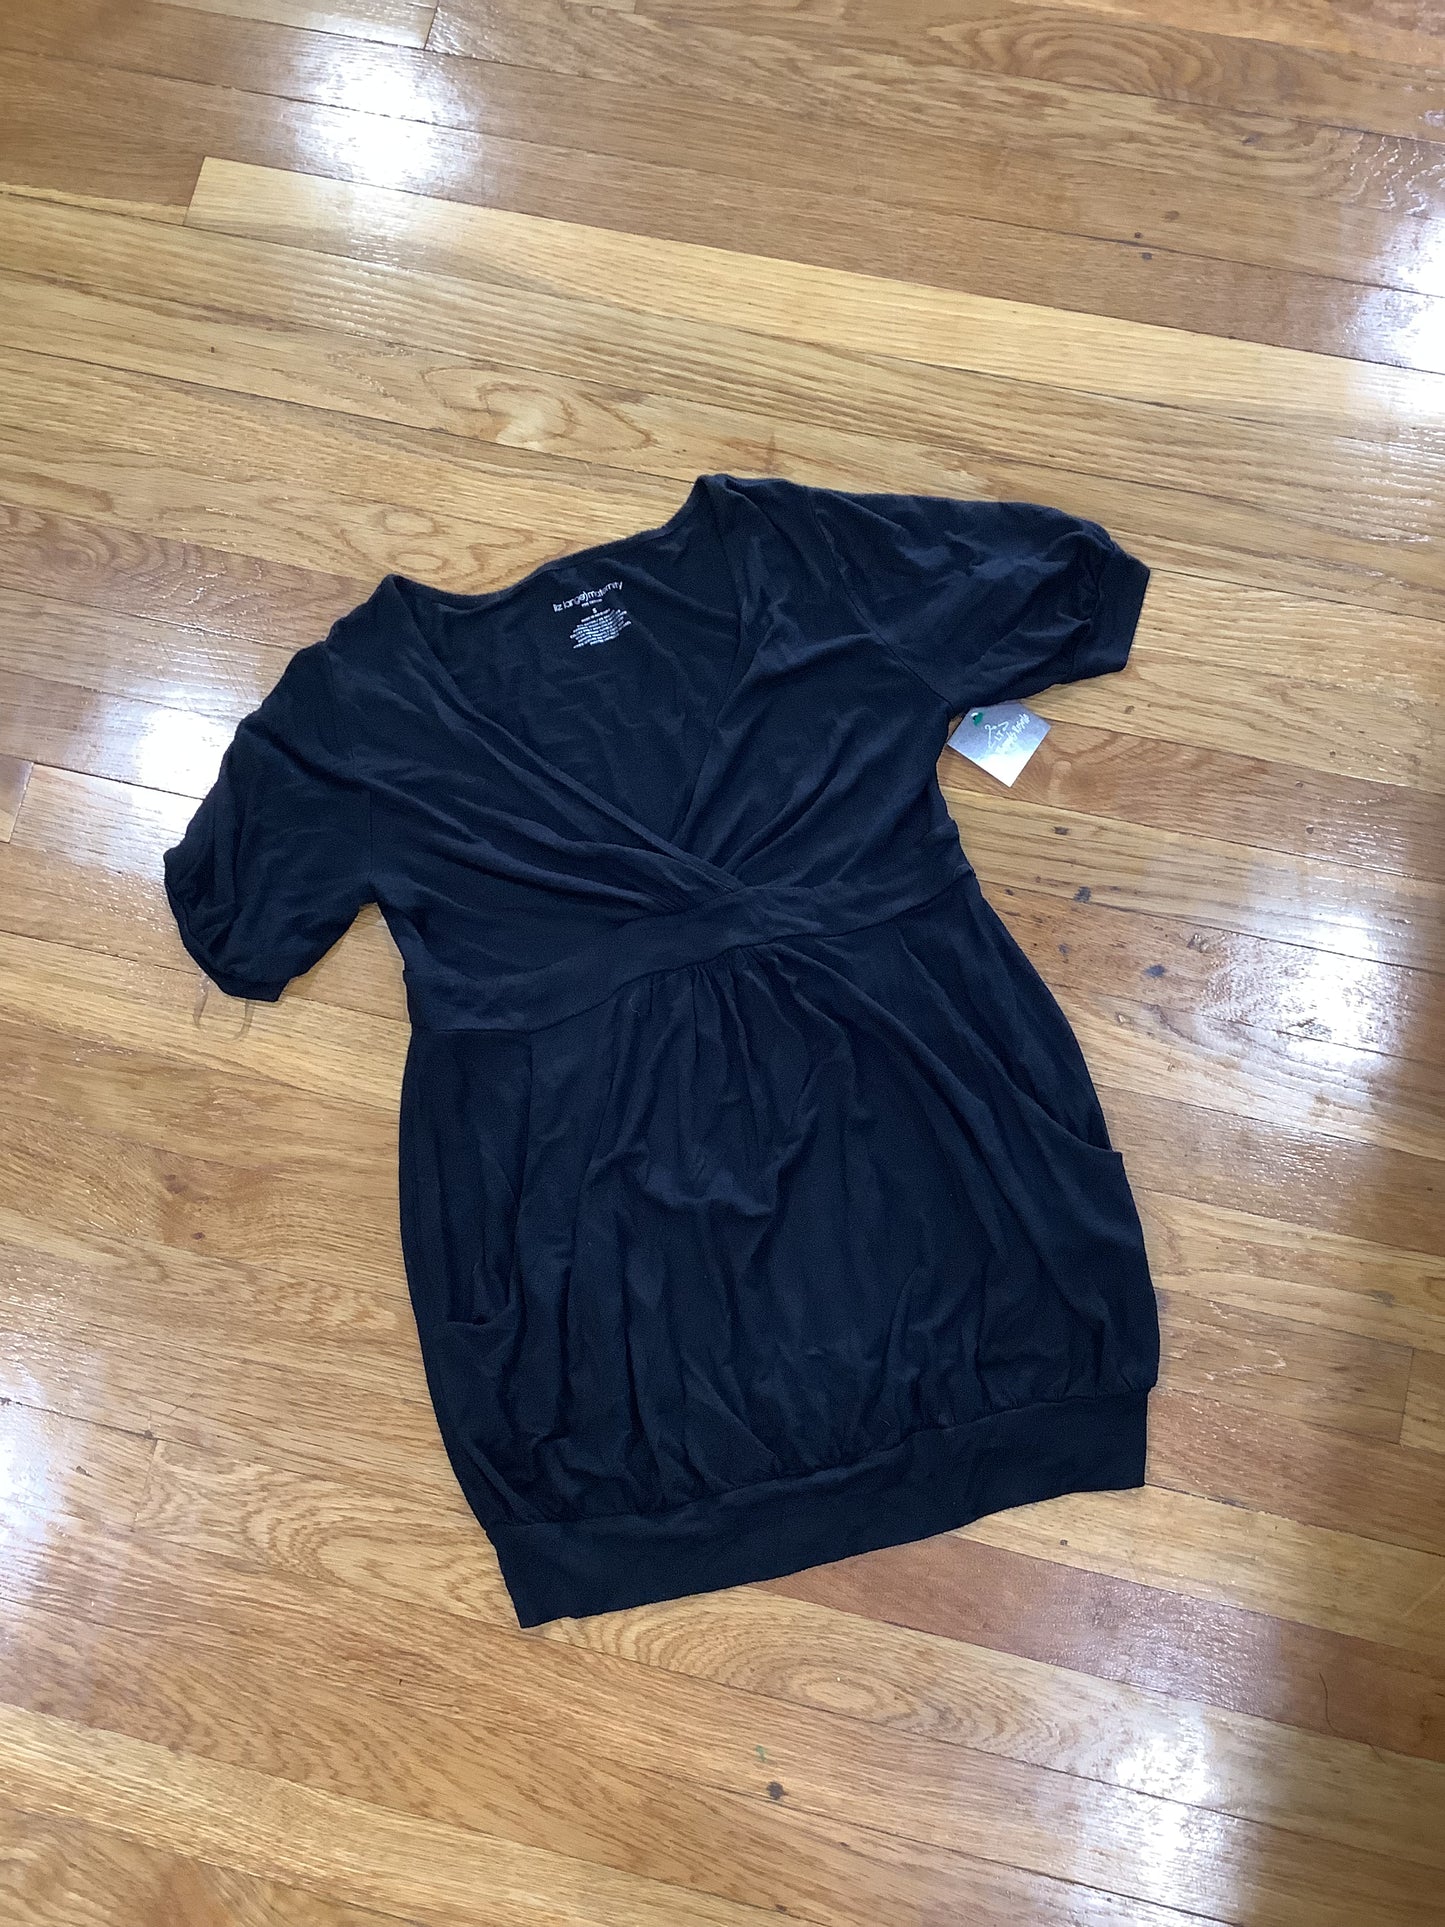 Woman’s maternity shirt size small